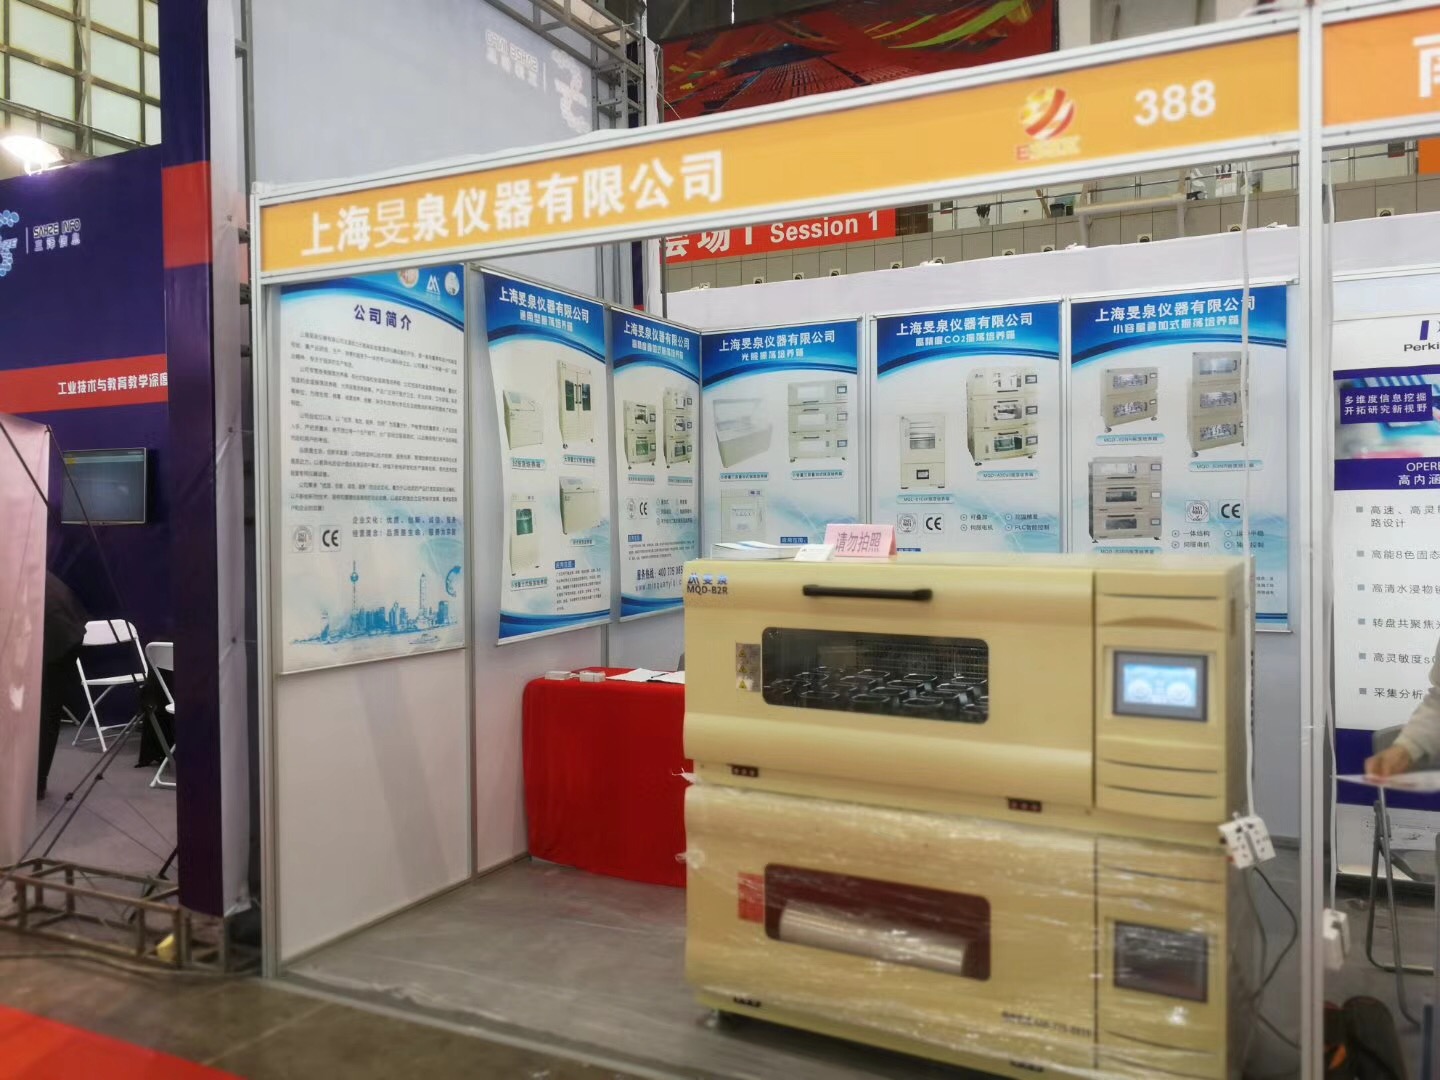 旻泉儀器參加2018南京國際科學儀器展